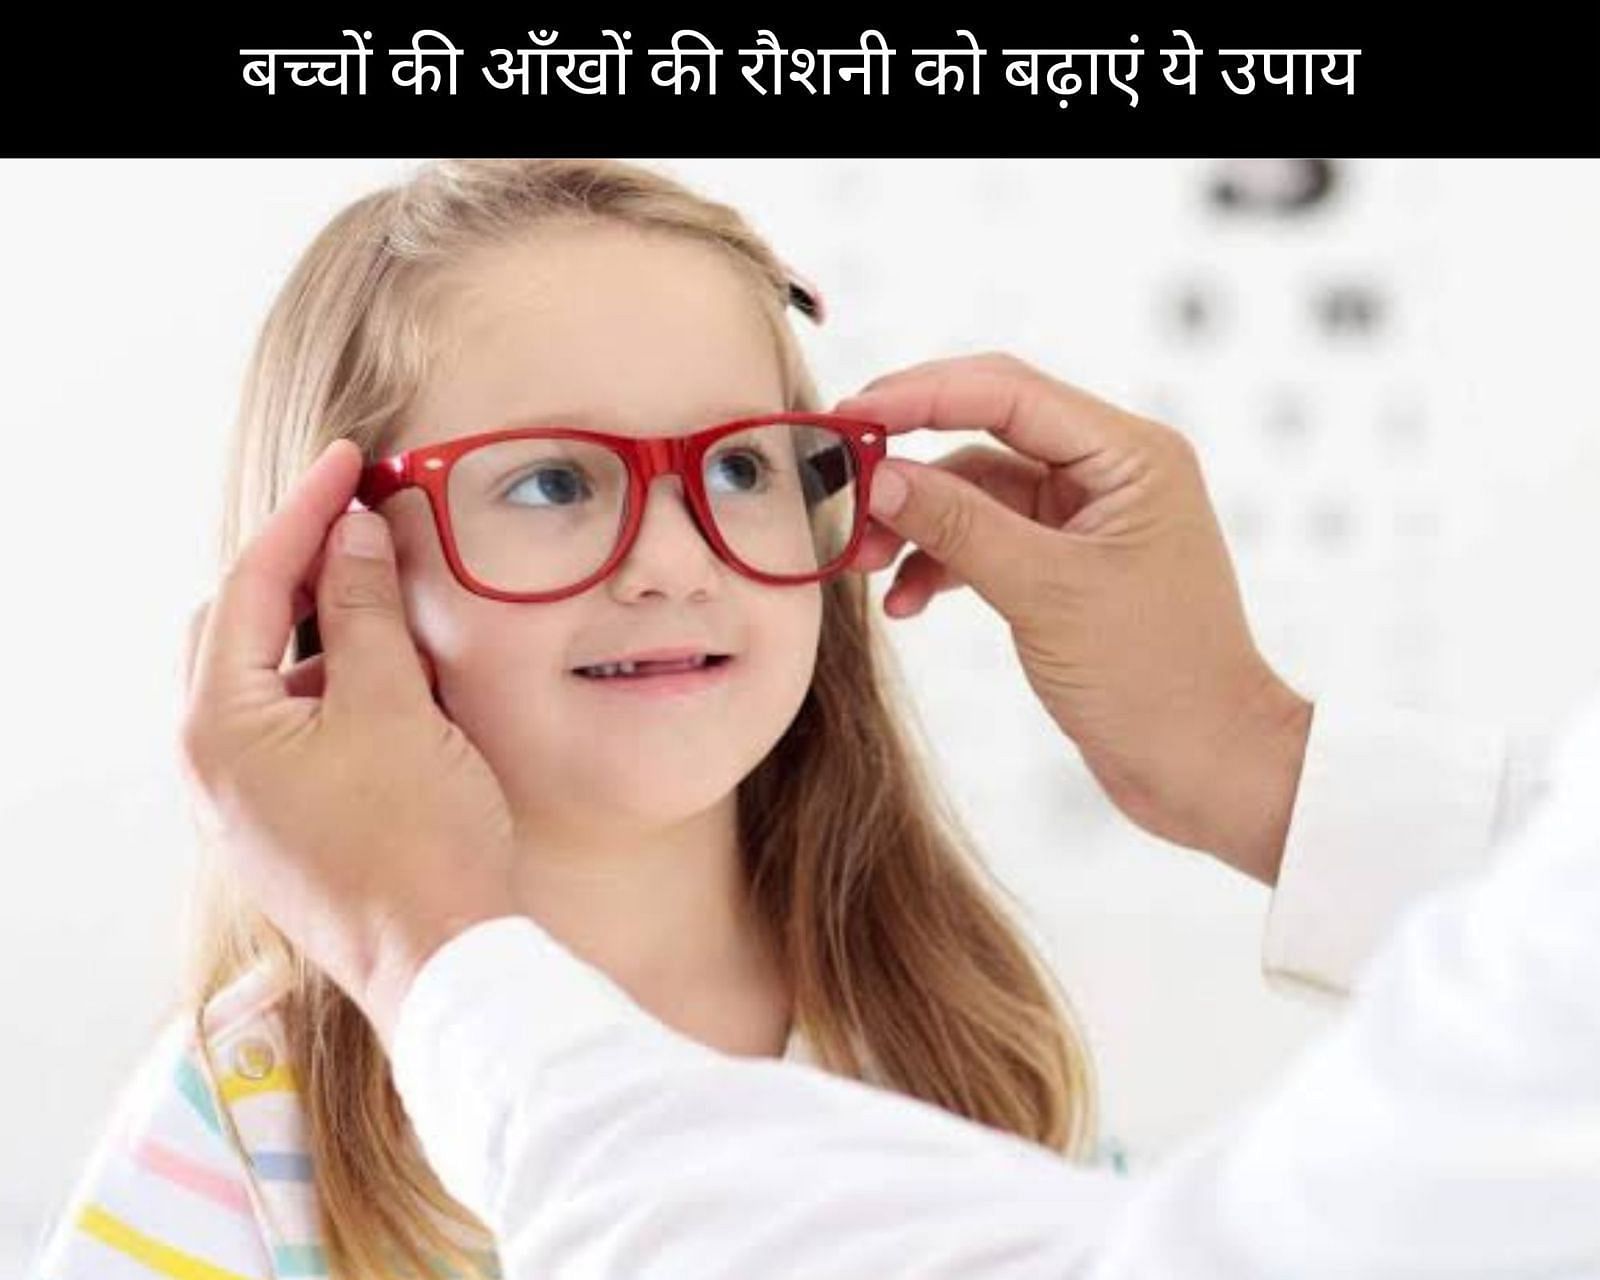 बच्चों की आँखों की रौशनी को बढ़ाएं ये 9 उपाय (फोटो - sportskeedaहिन्दी)